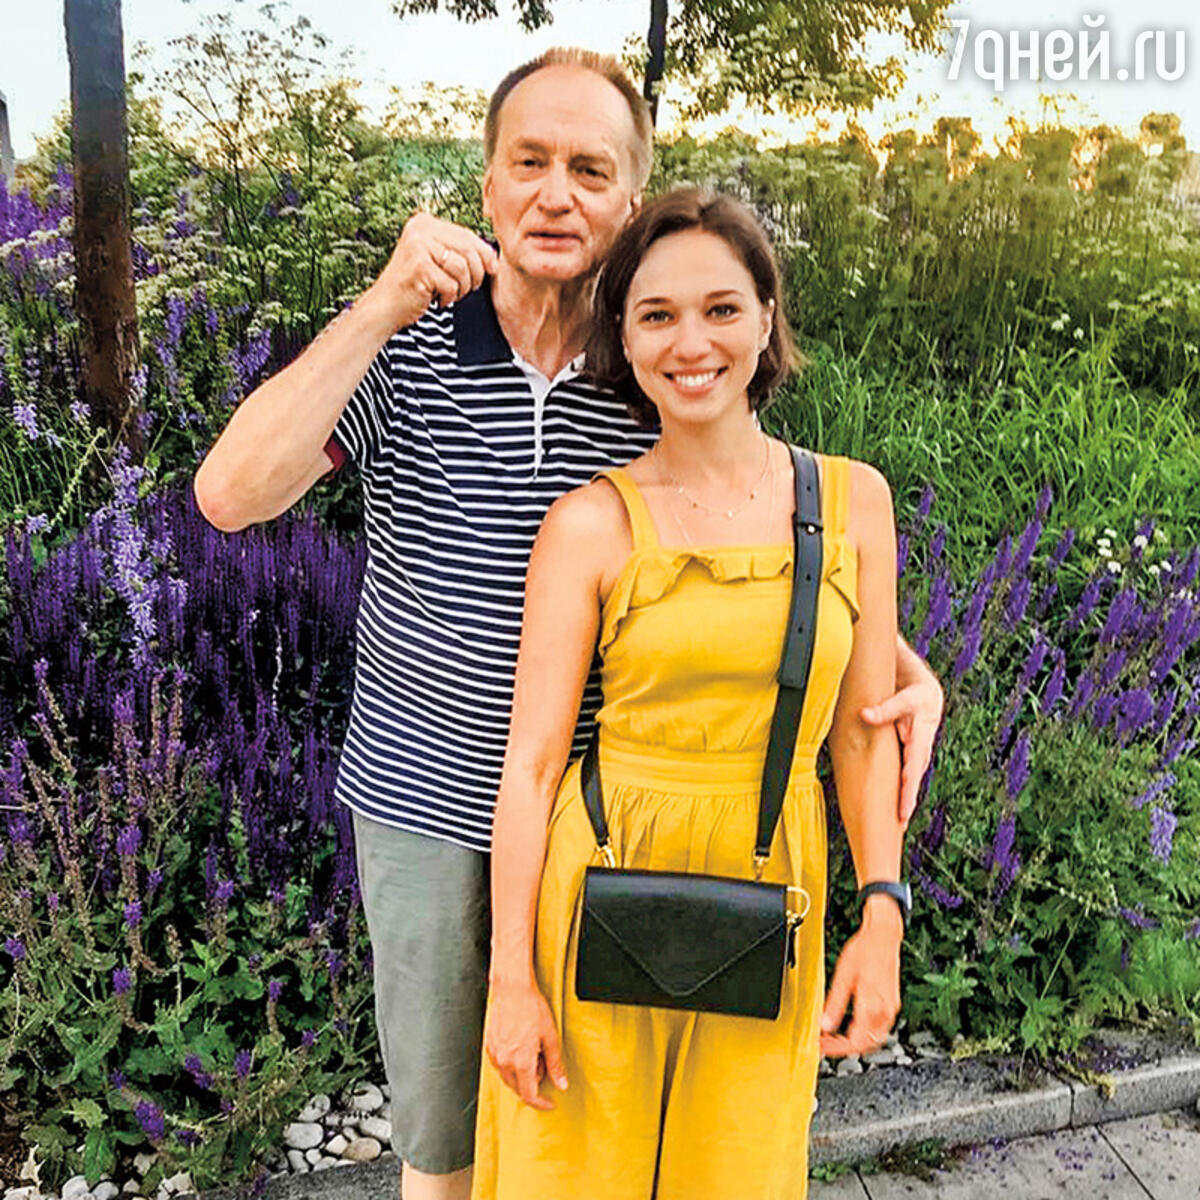 Ксения Теплова: «Будущий муж сразил меня своим напором» - 7Дней.ру